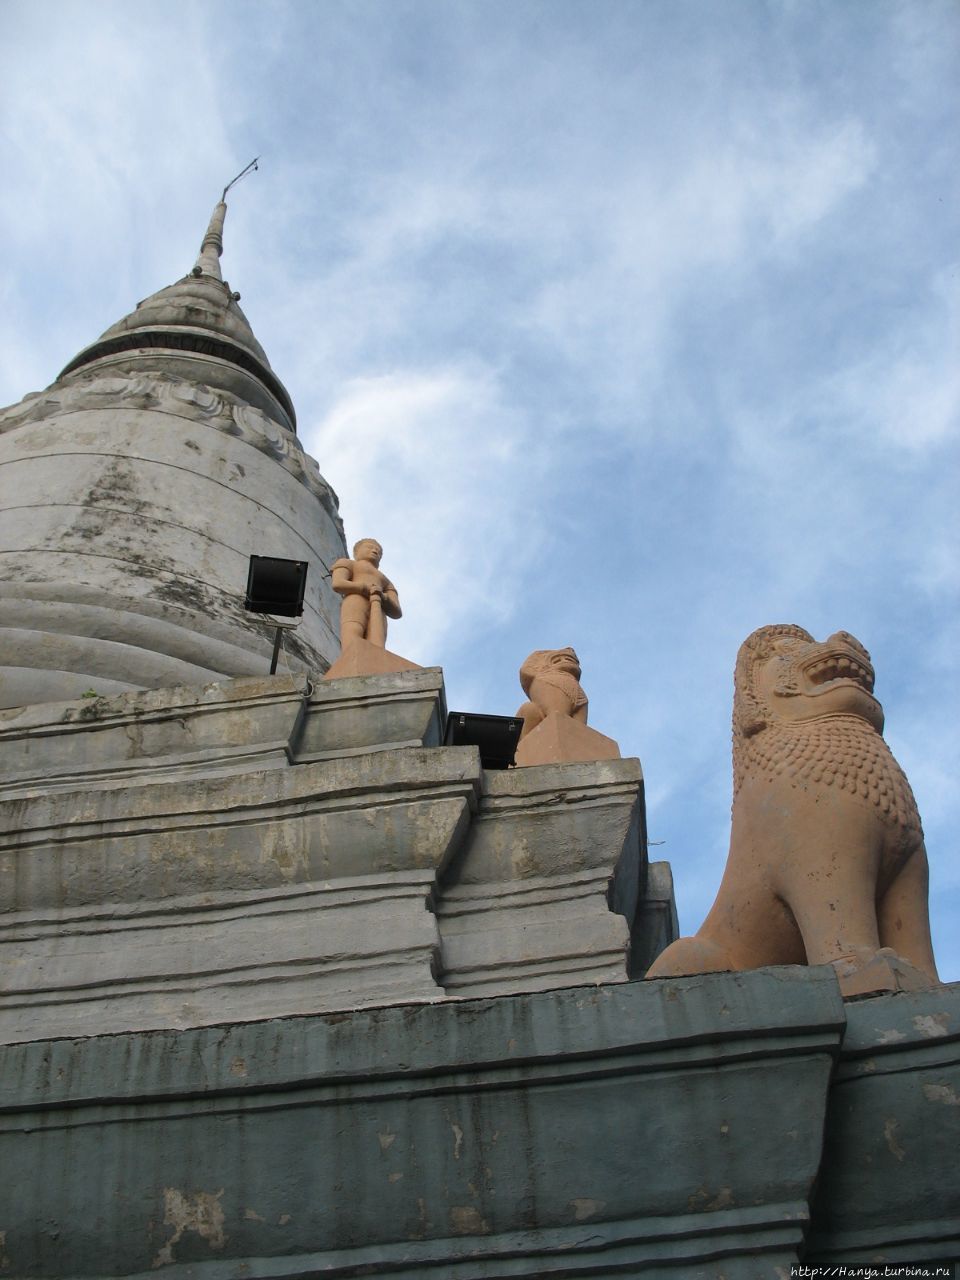 Ват Пном, или Храм на гор